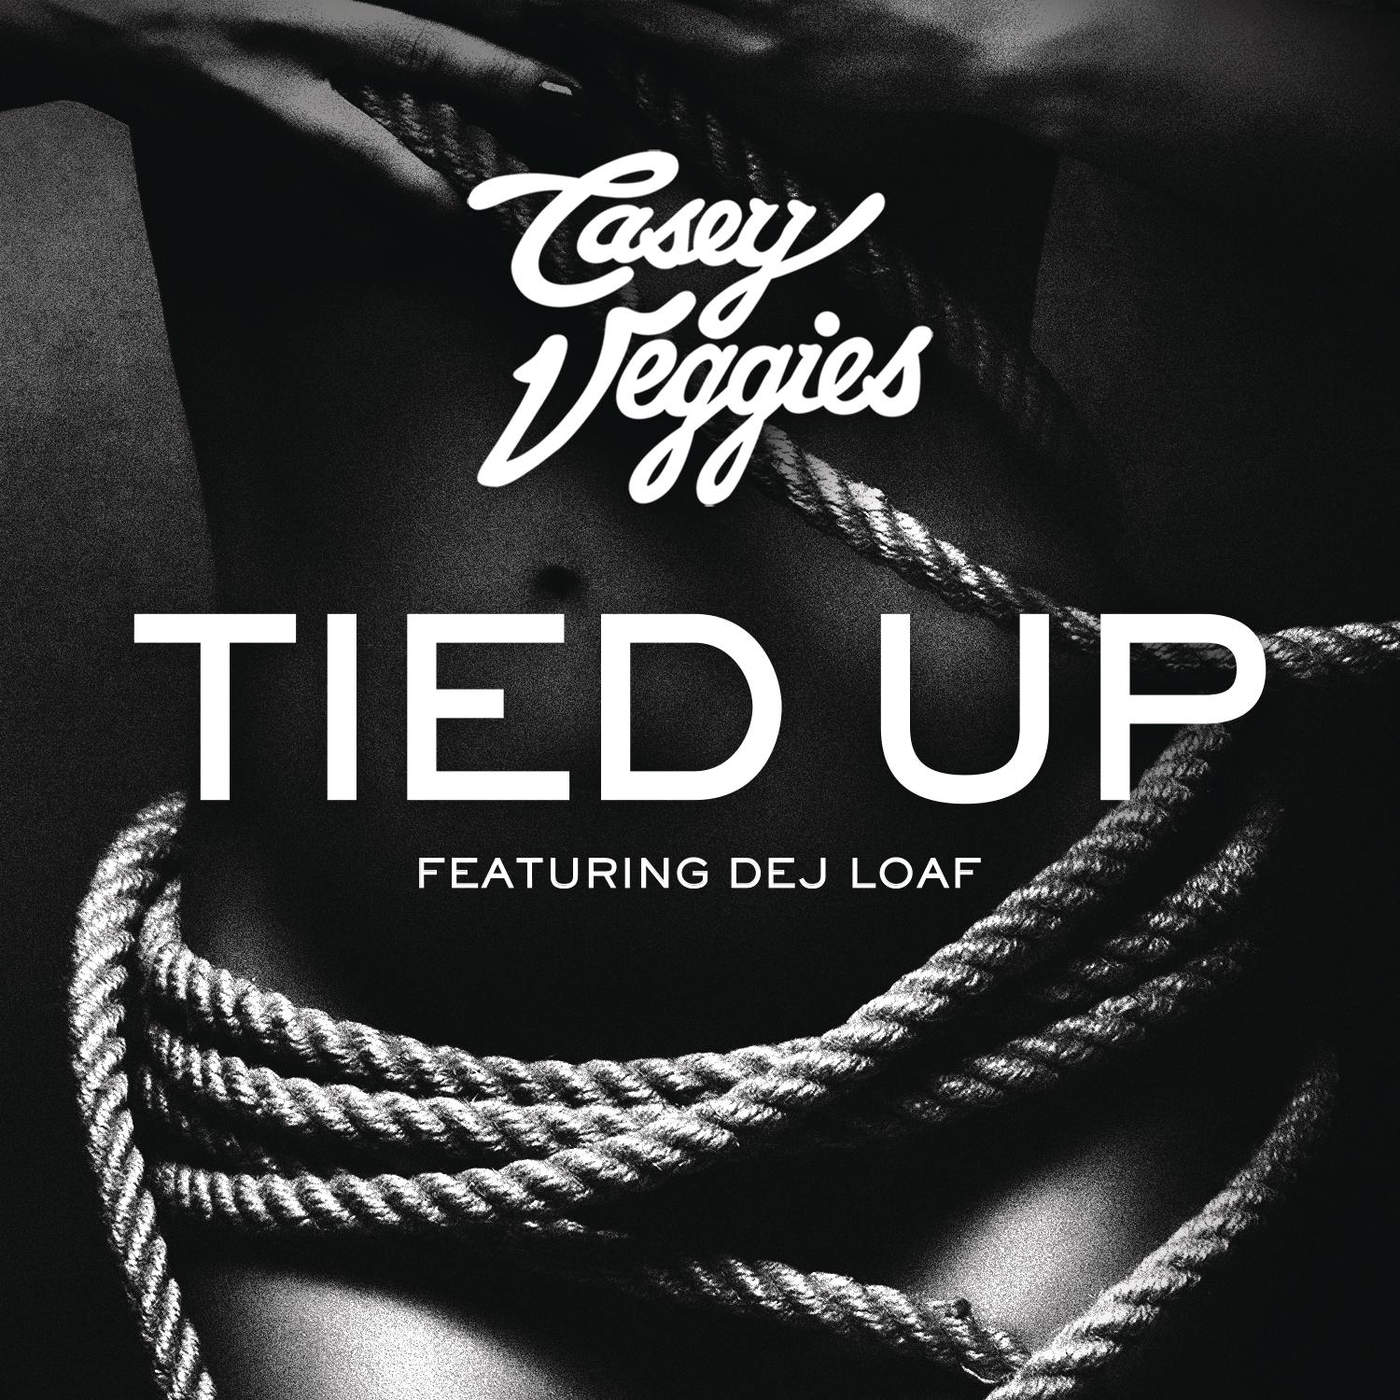 tied up ft dej loaf mp3 download